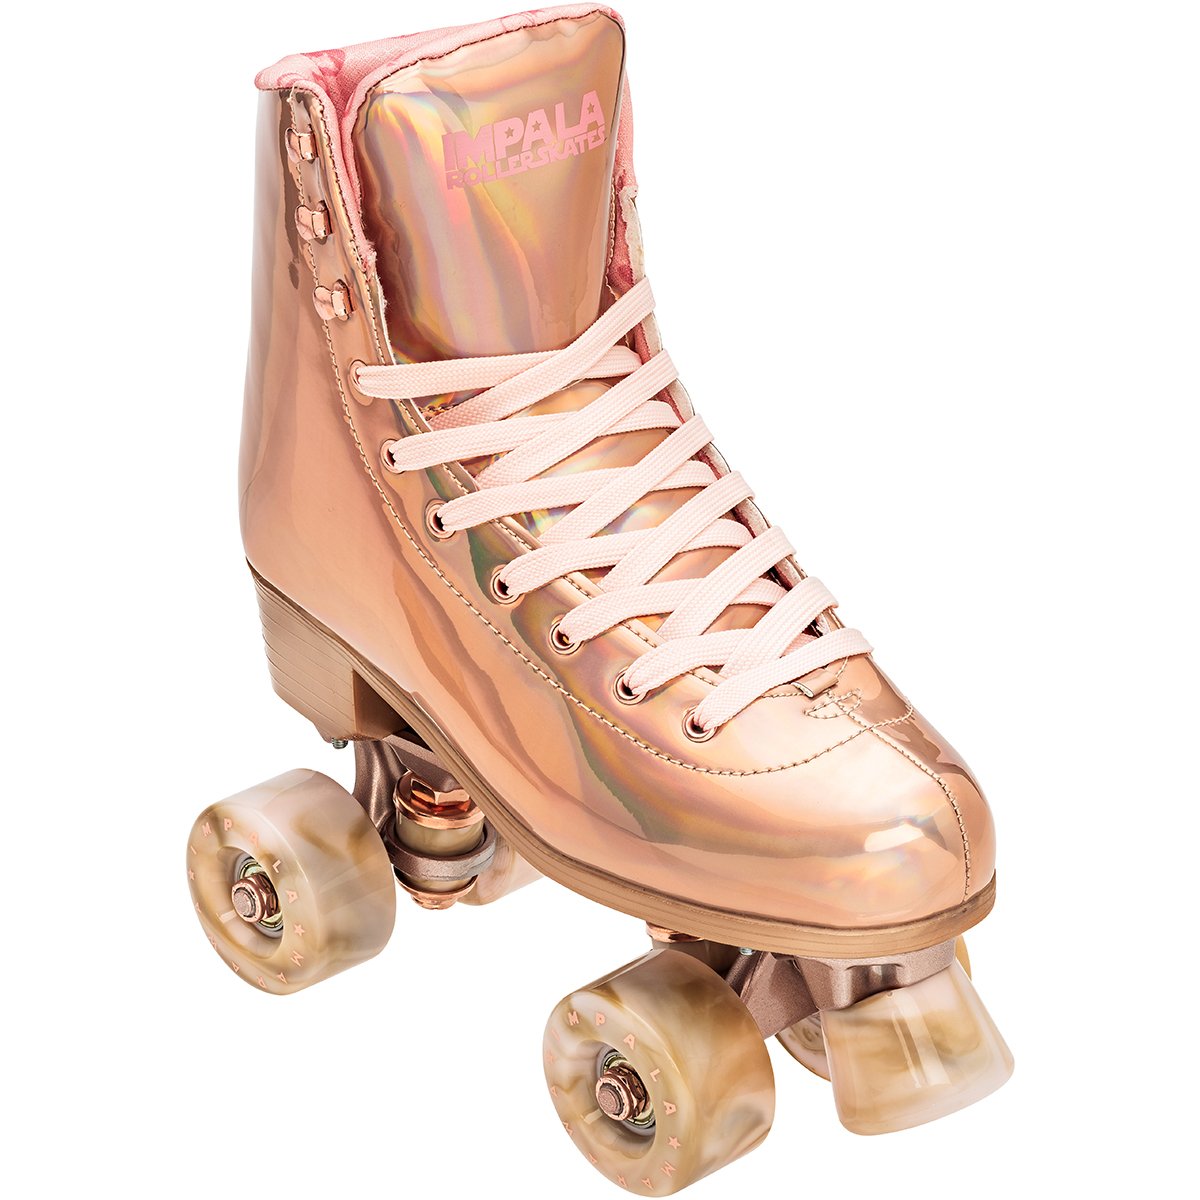 Rollerblades, Rollerblading, Inline Skates, Inline Skating, Skate Shops Near Me, Intuition Skate Shop, Roller Skates, Impala Marawa rose gold roller skates